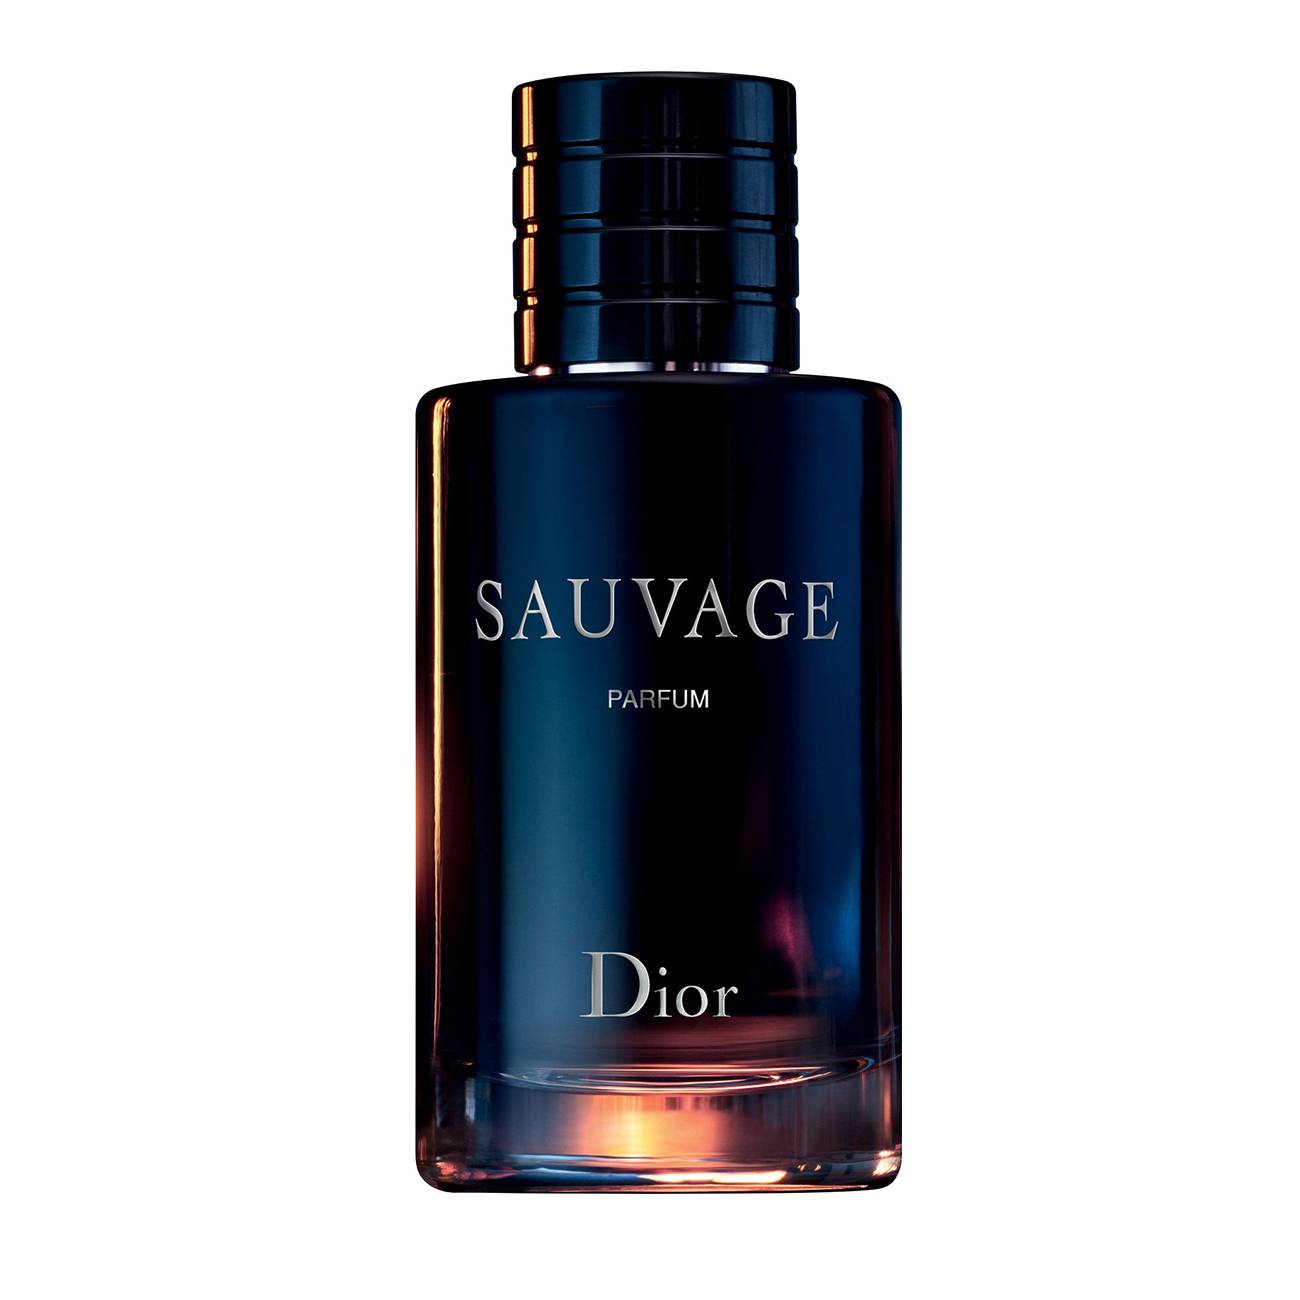 Apa de Parfum Dior SAUVAGE PARFUM 200ml cu comanda online